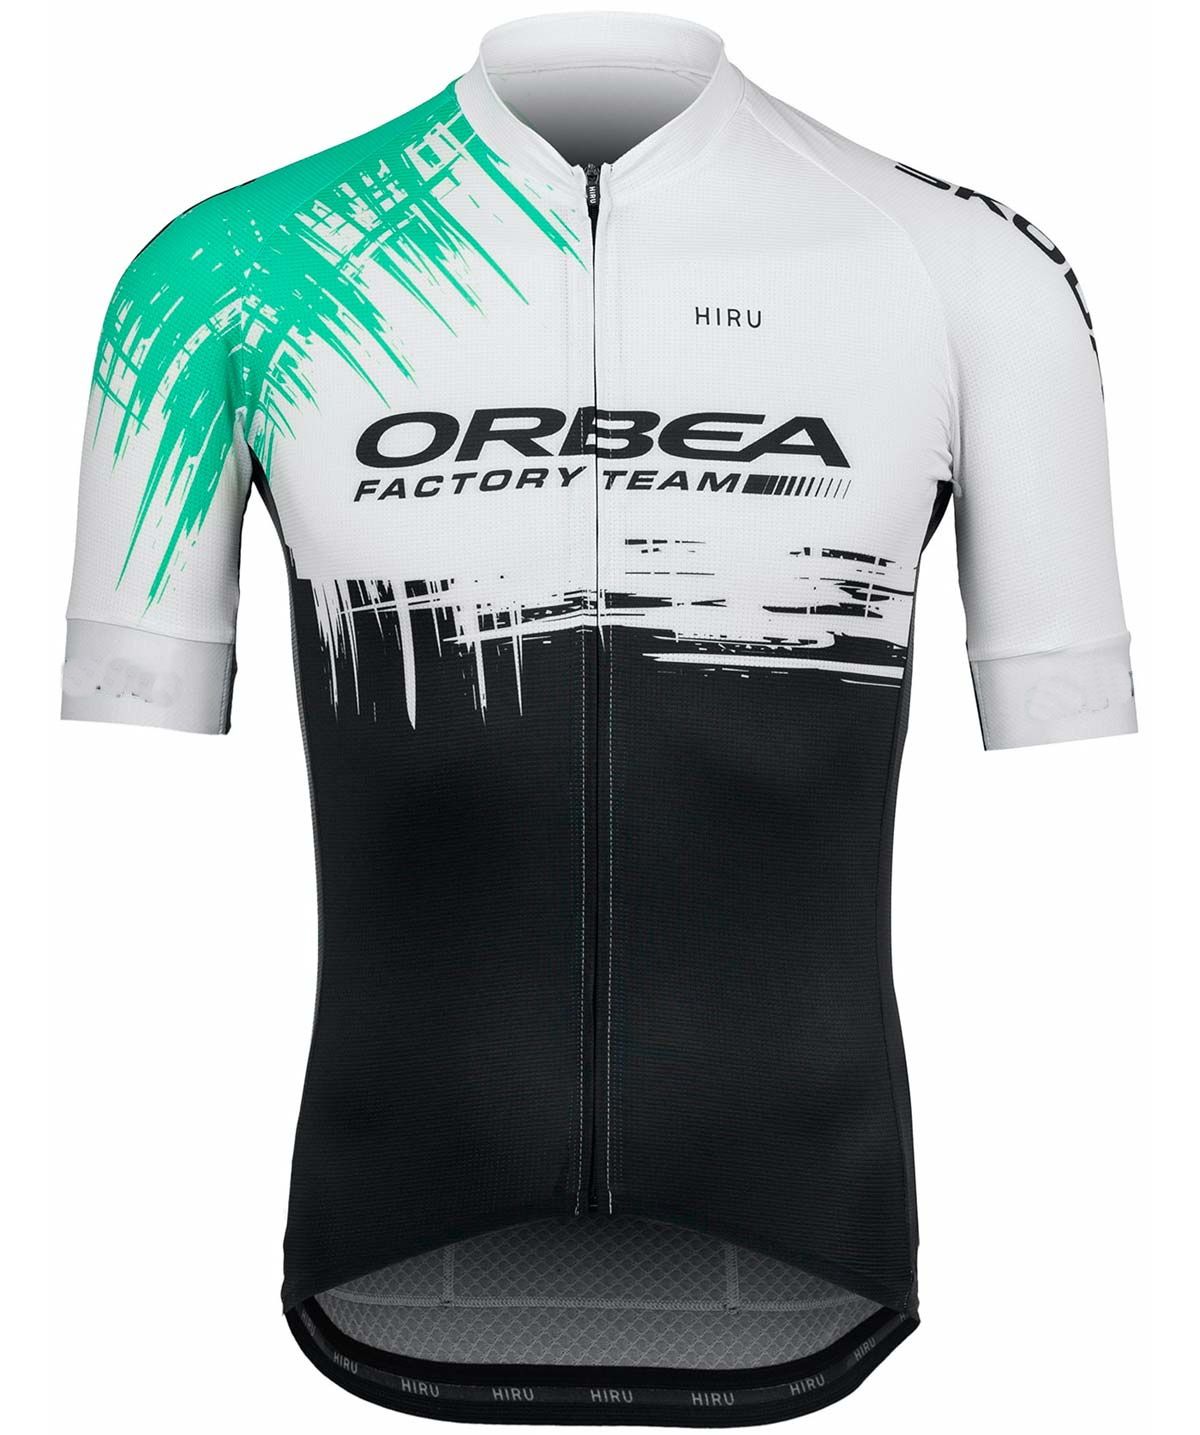 2021 Orbea Factory Team es Sólo Manga Corta Ropa Ciclismo Camisa Ciclismo Jersey Ciclismo De Desgaste: XS 4X Con Banda De Poder Por Leesun1983, 16,91 € DHgate